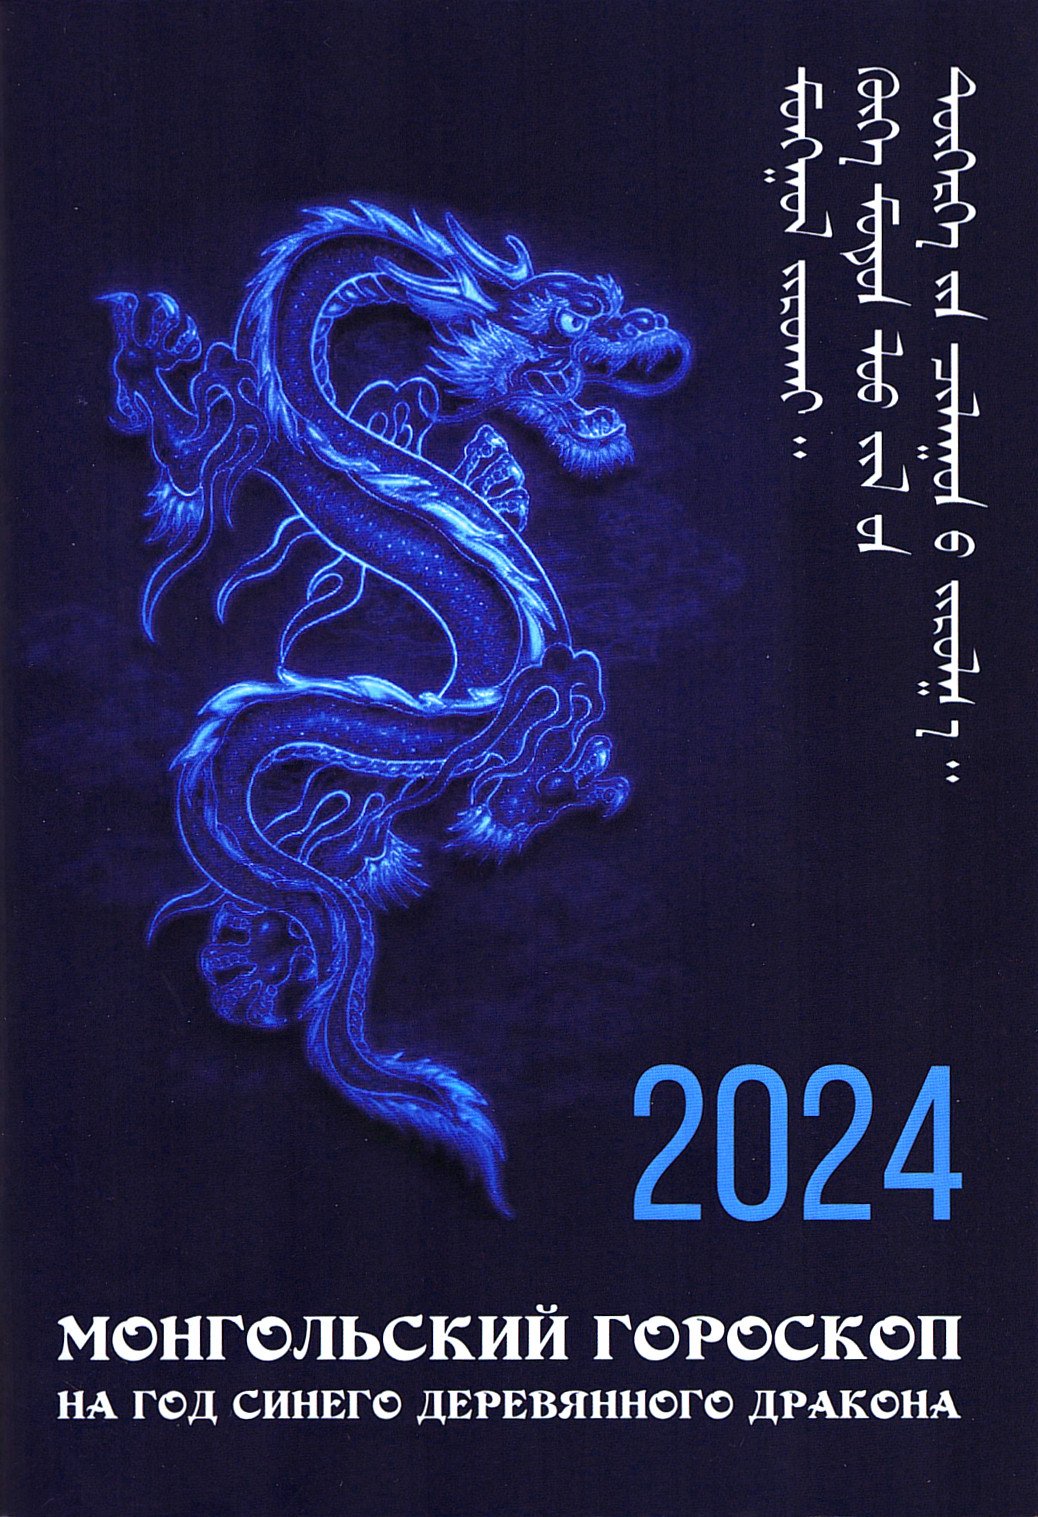 Монгольский гороскоп на год Синего Деревянного Дракона 2024-2025. 